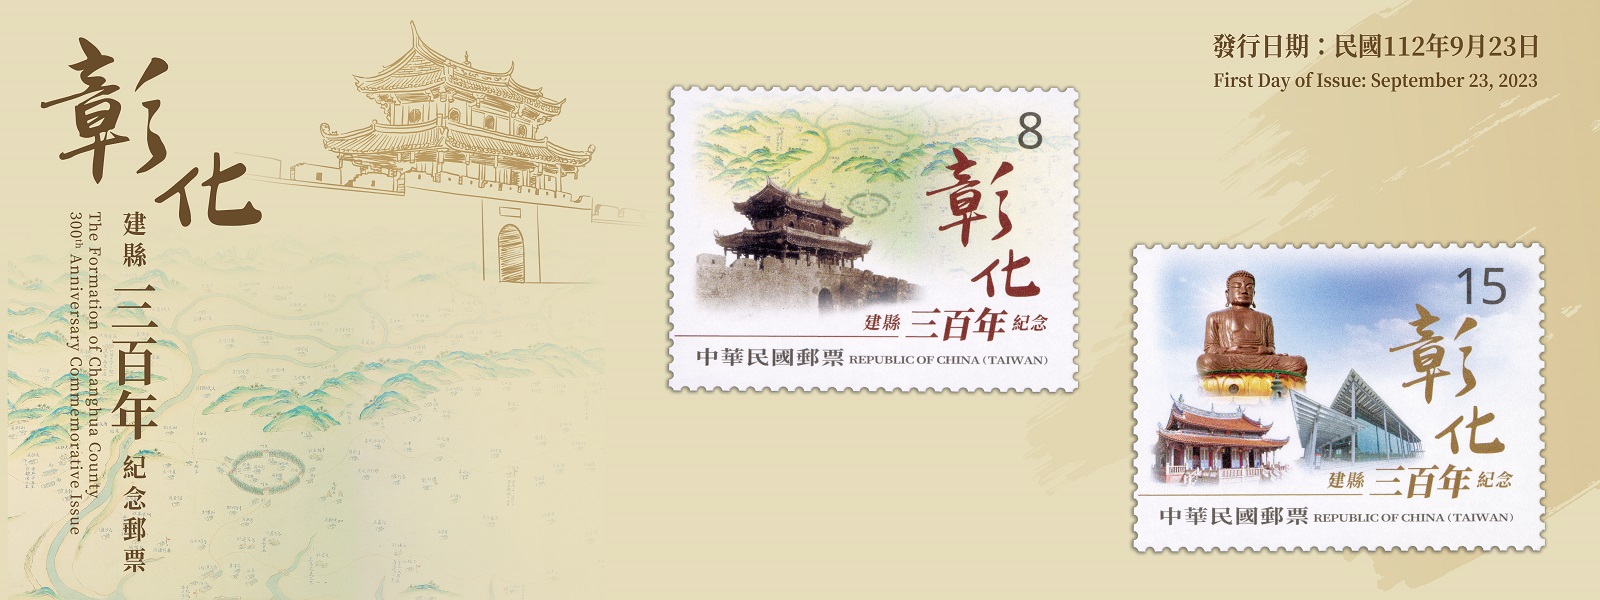 廣告連結:紀349 彰化建縣三百年紀念郵票